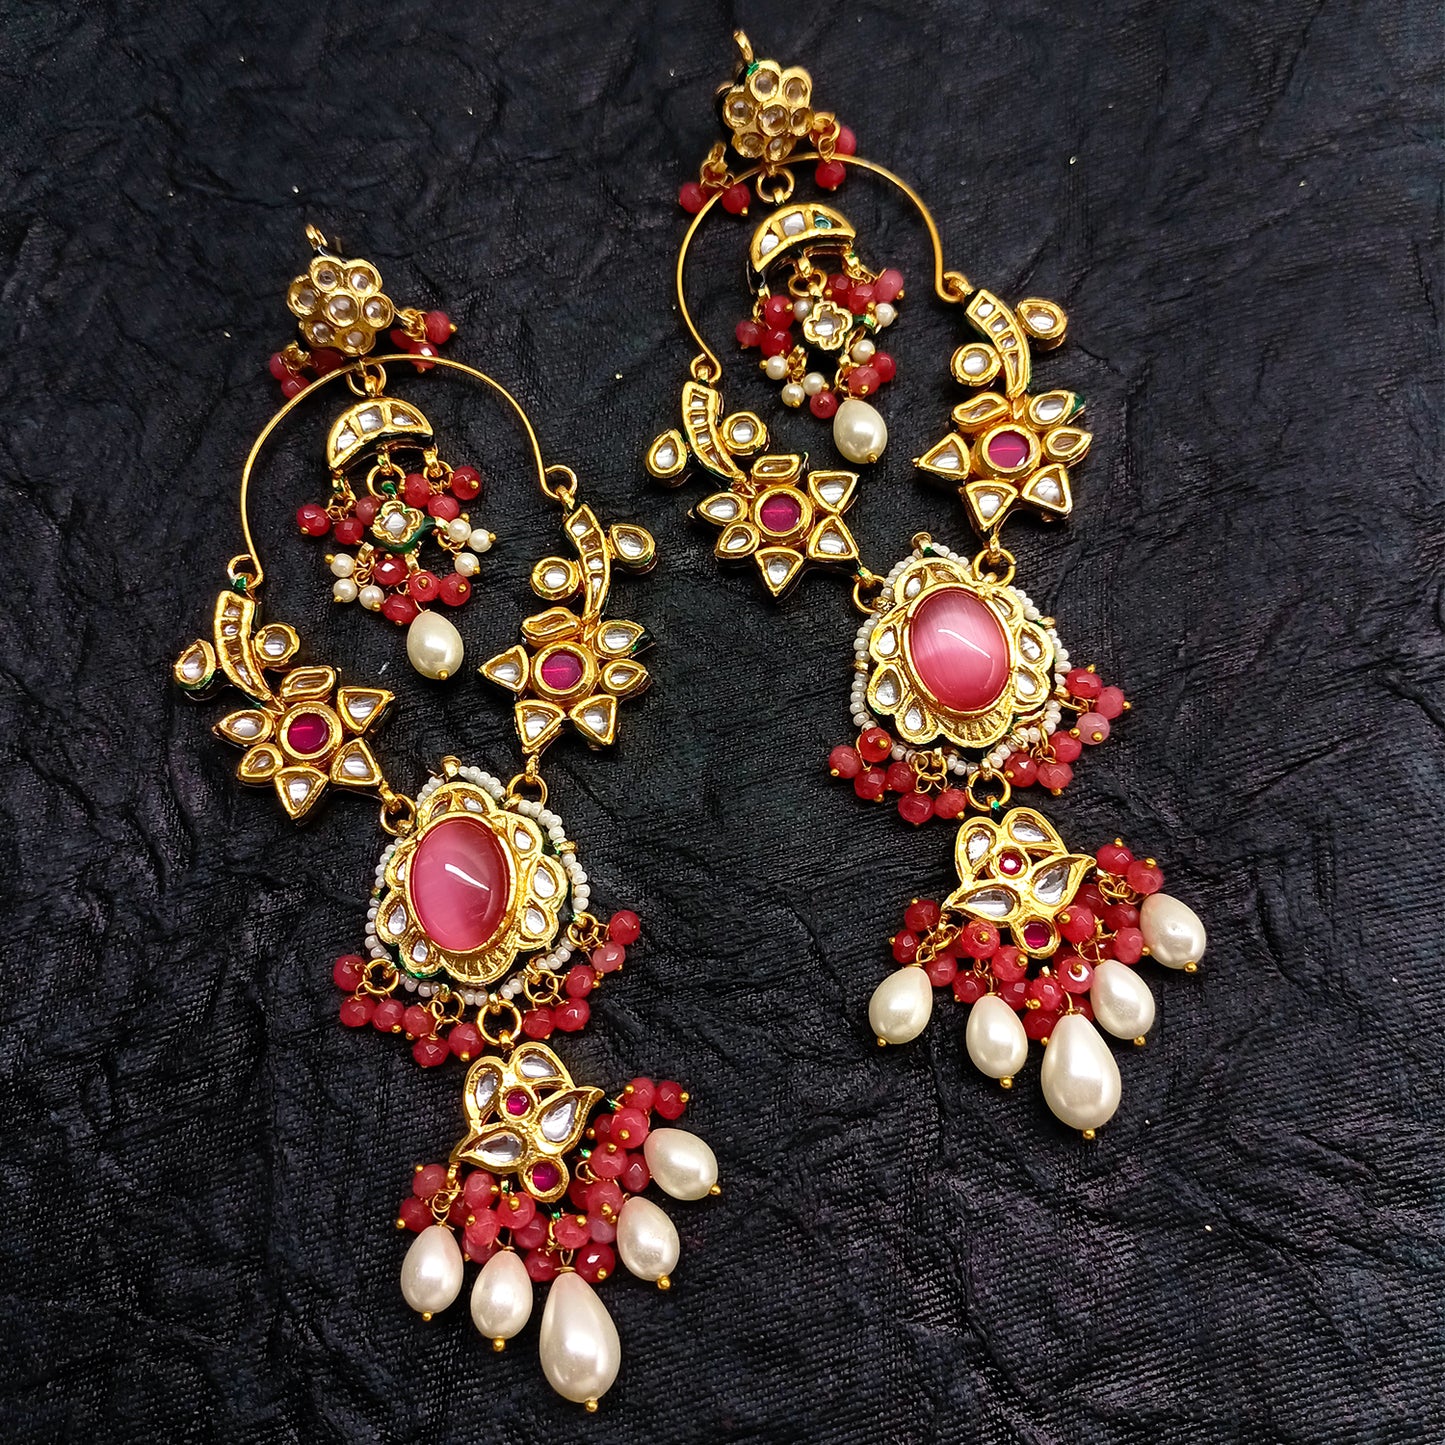 Pragti Long Kundan Earrings With Pink Stone